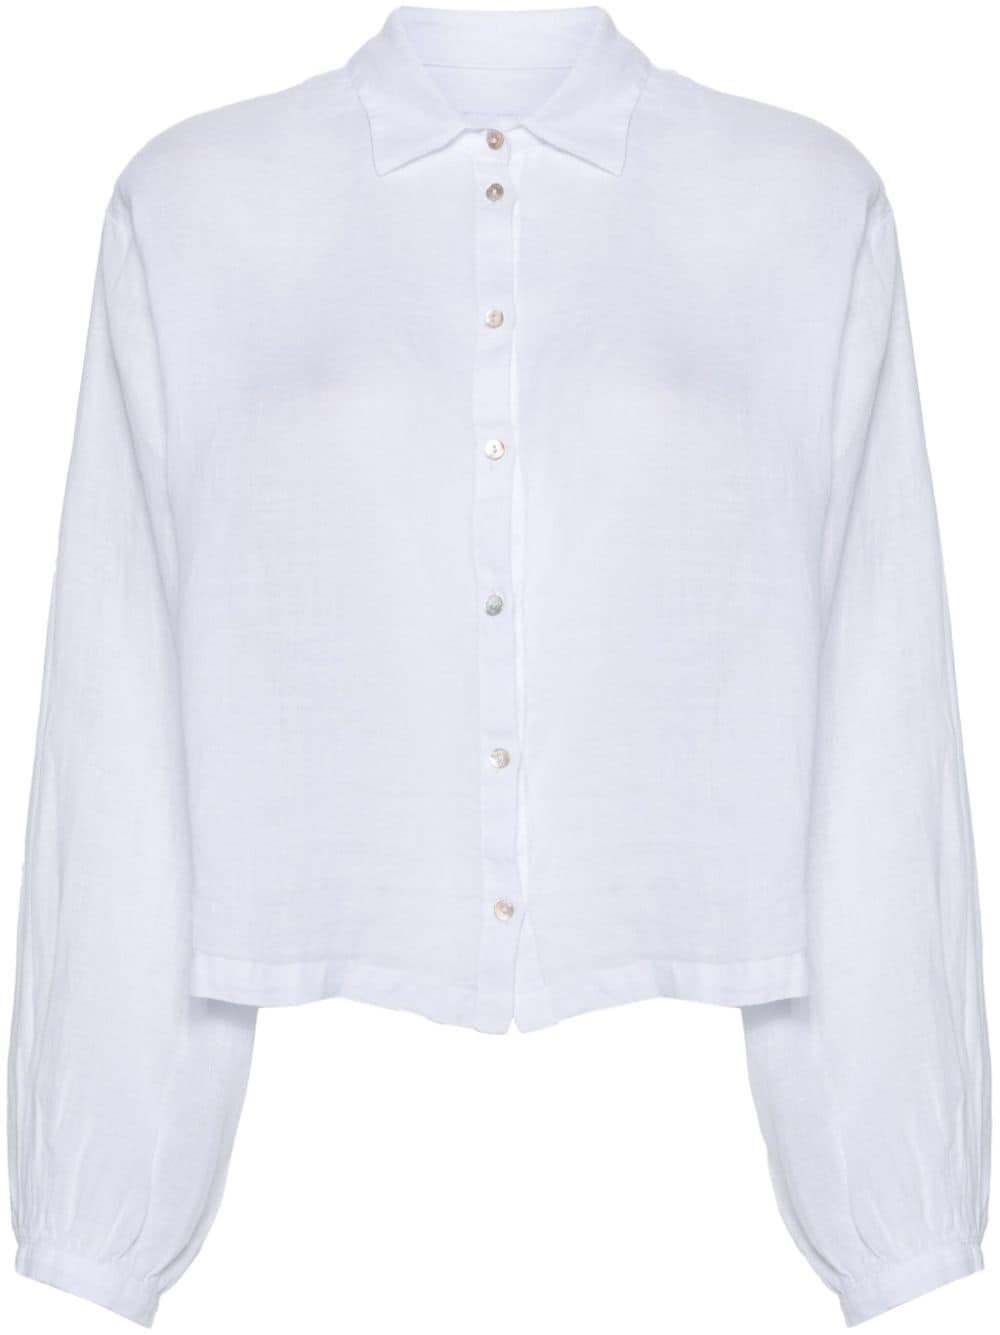 120% Lino semi-sheer linen shirt - White von 120% Lino